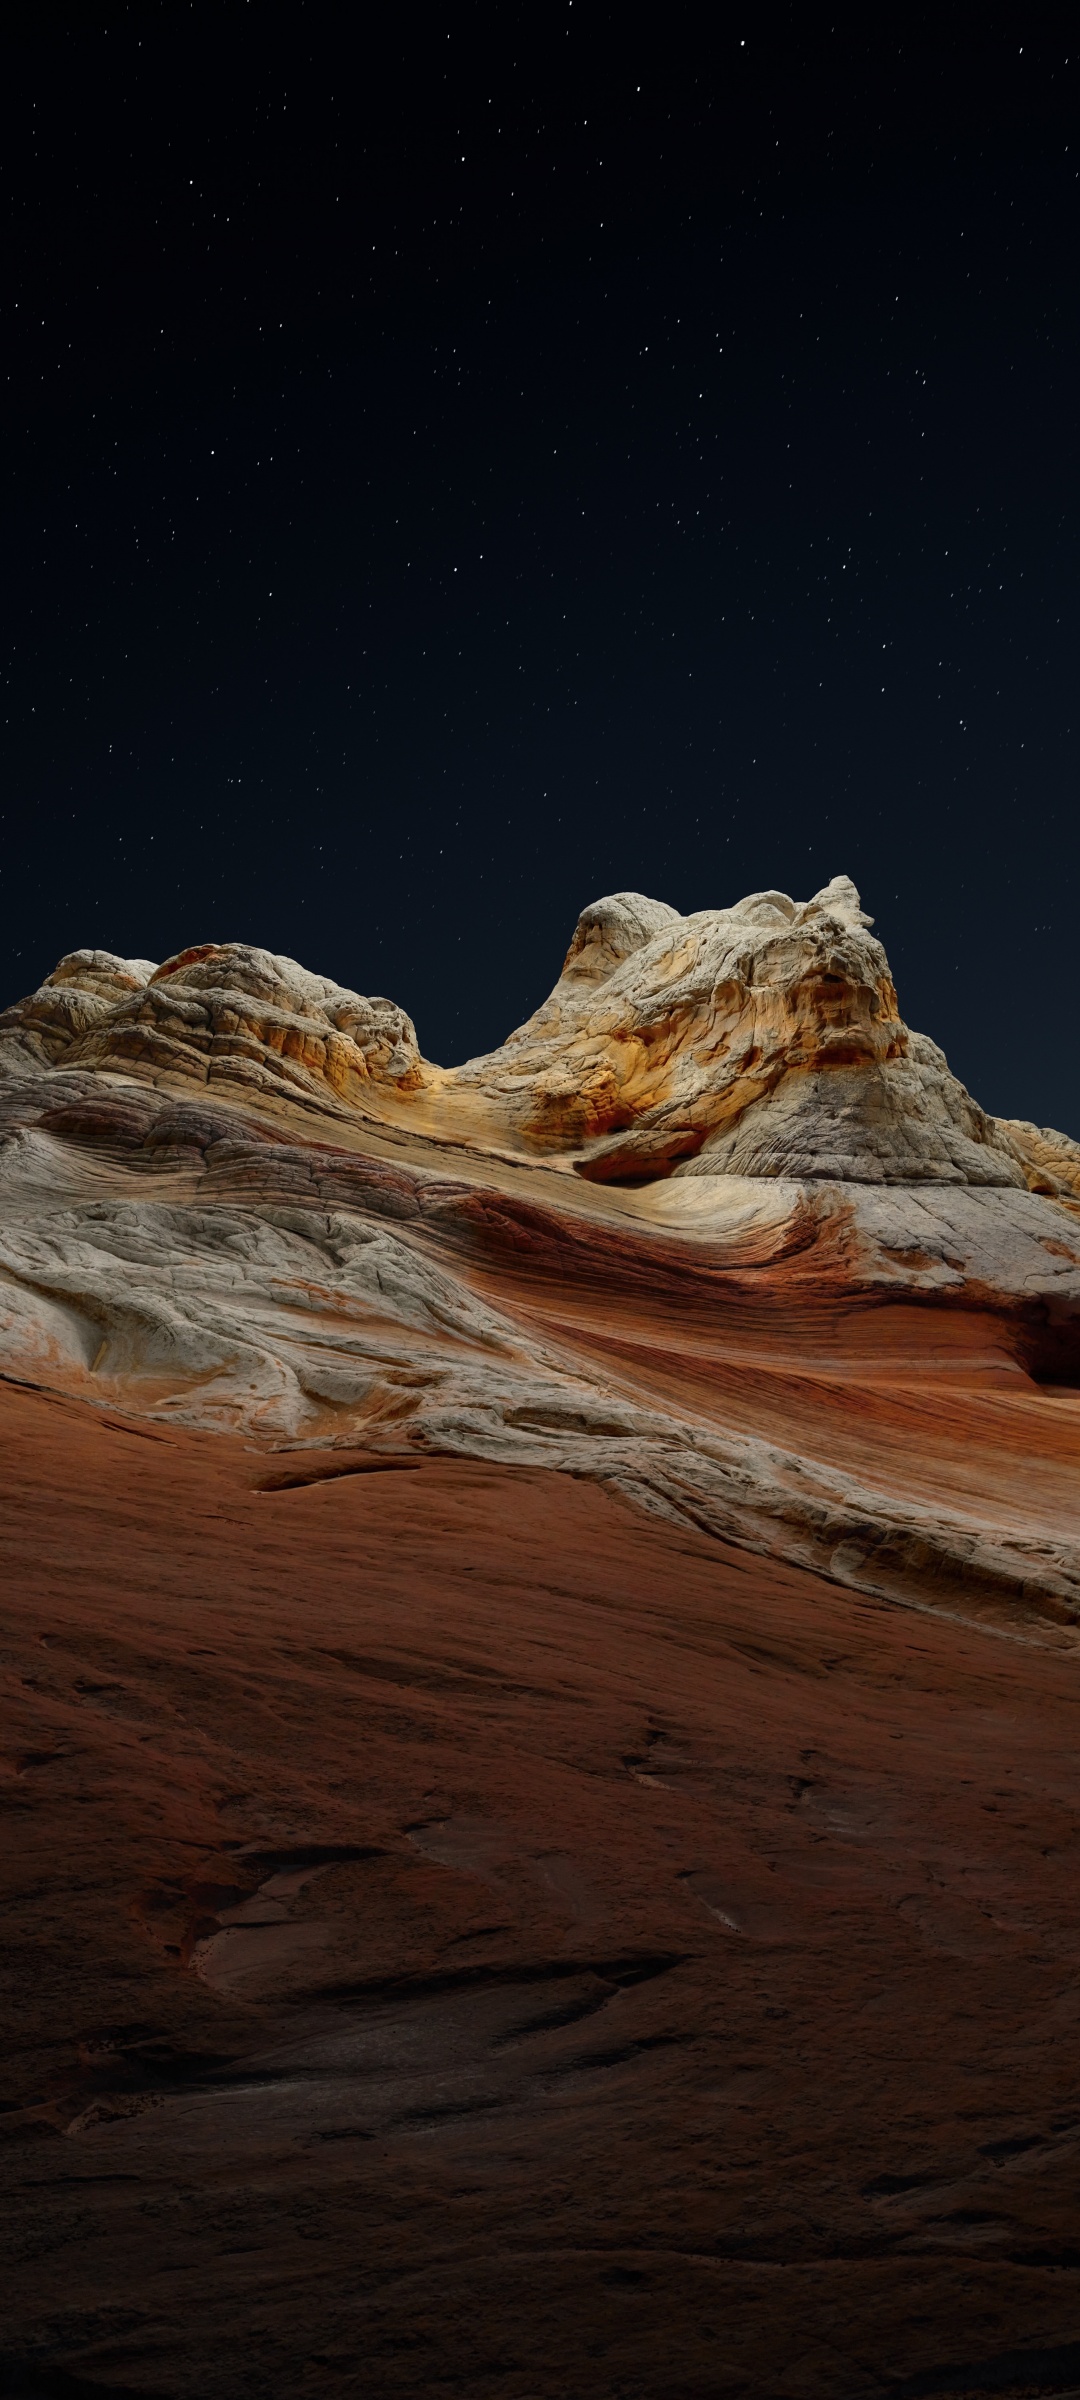 macOS Big Sur Wallpaper 4K, Stock, Night, Sedimentary rocks, Desert